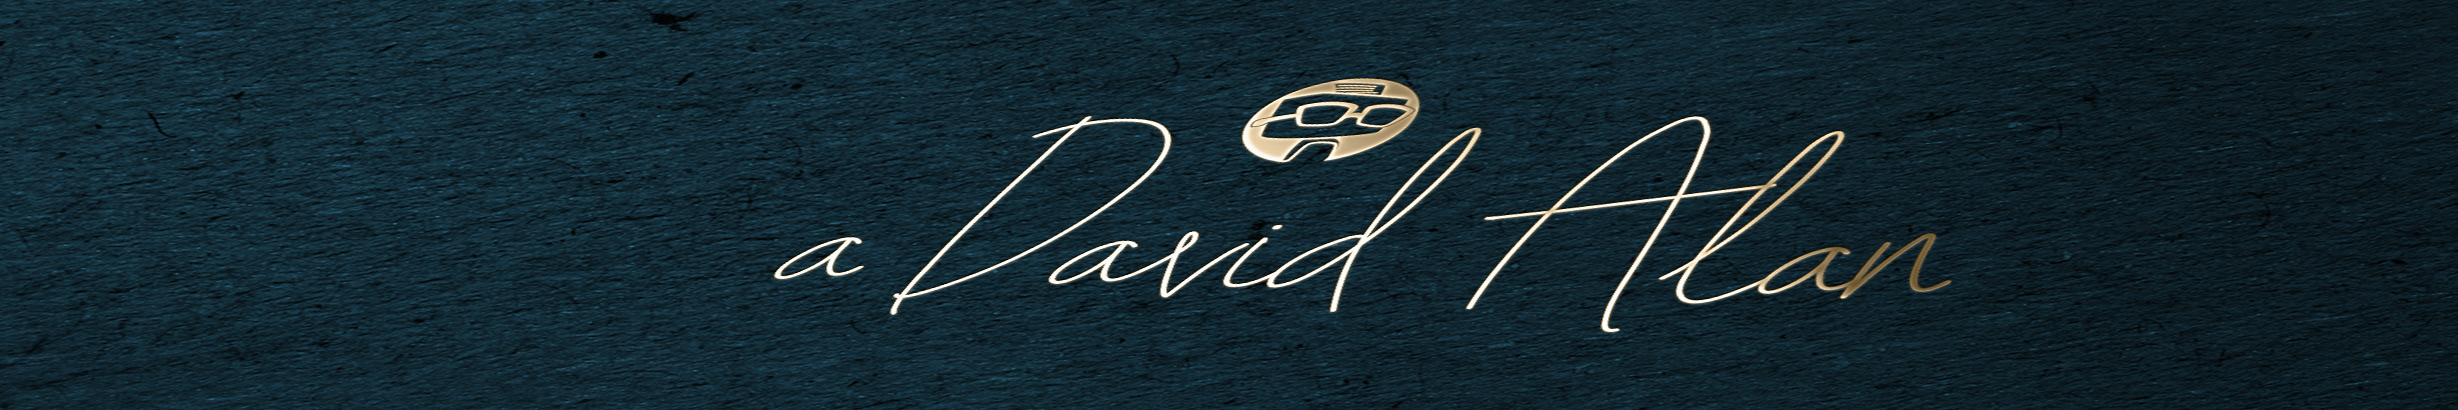 Profil-Banner von David Alan